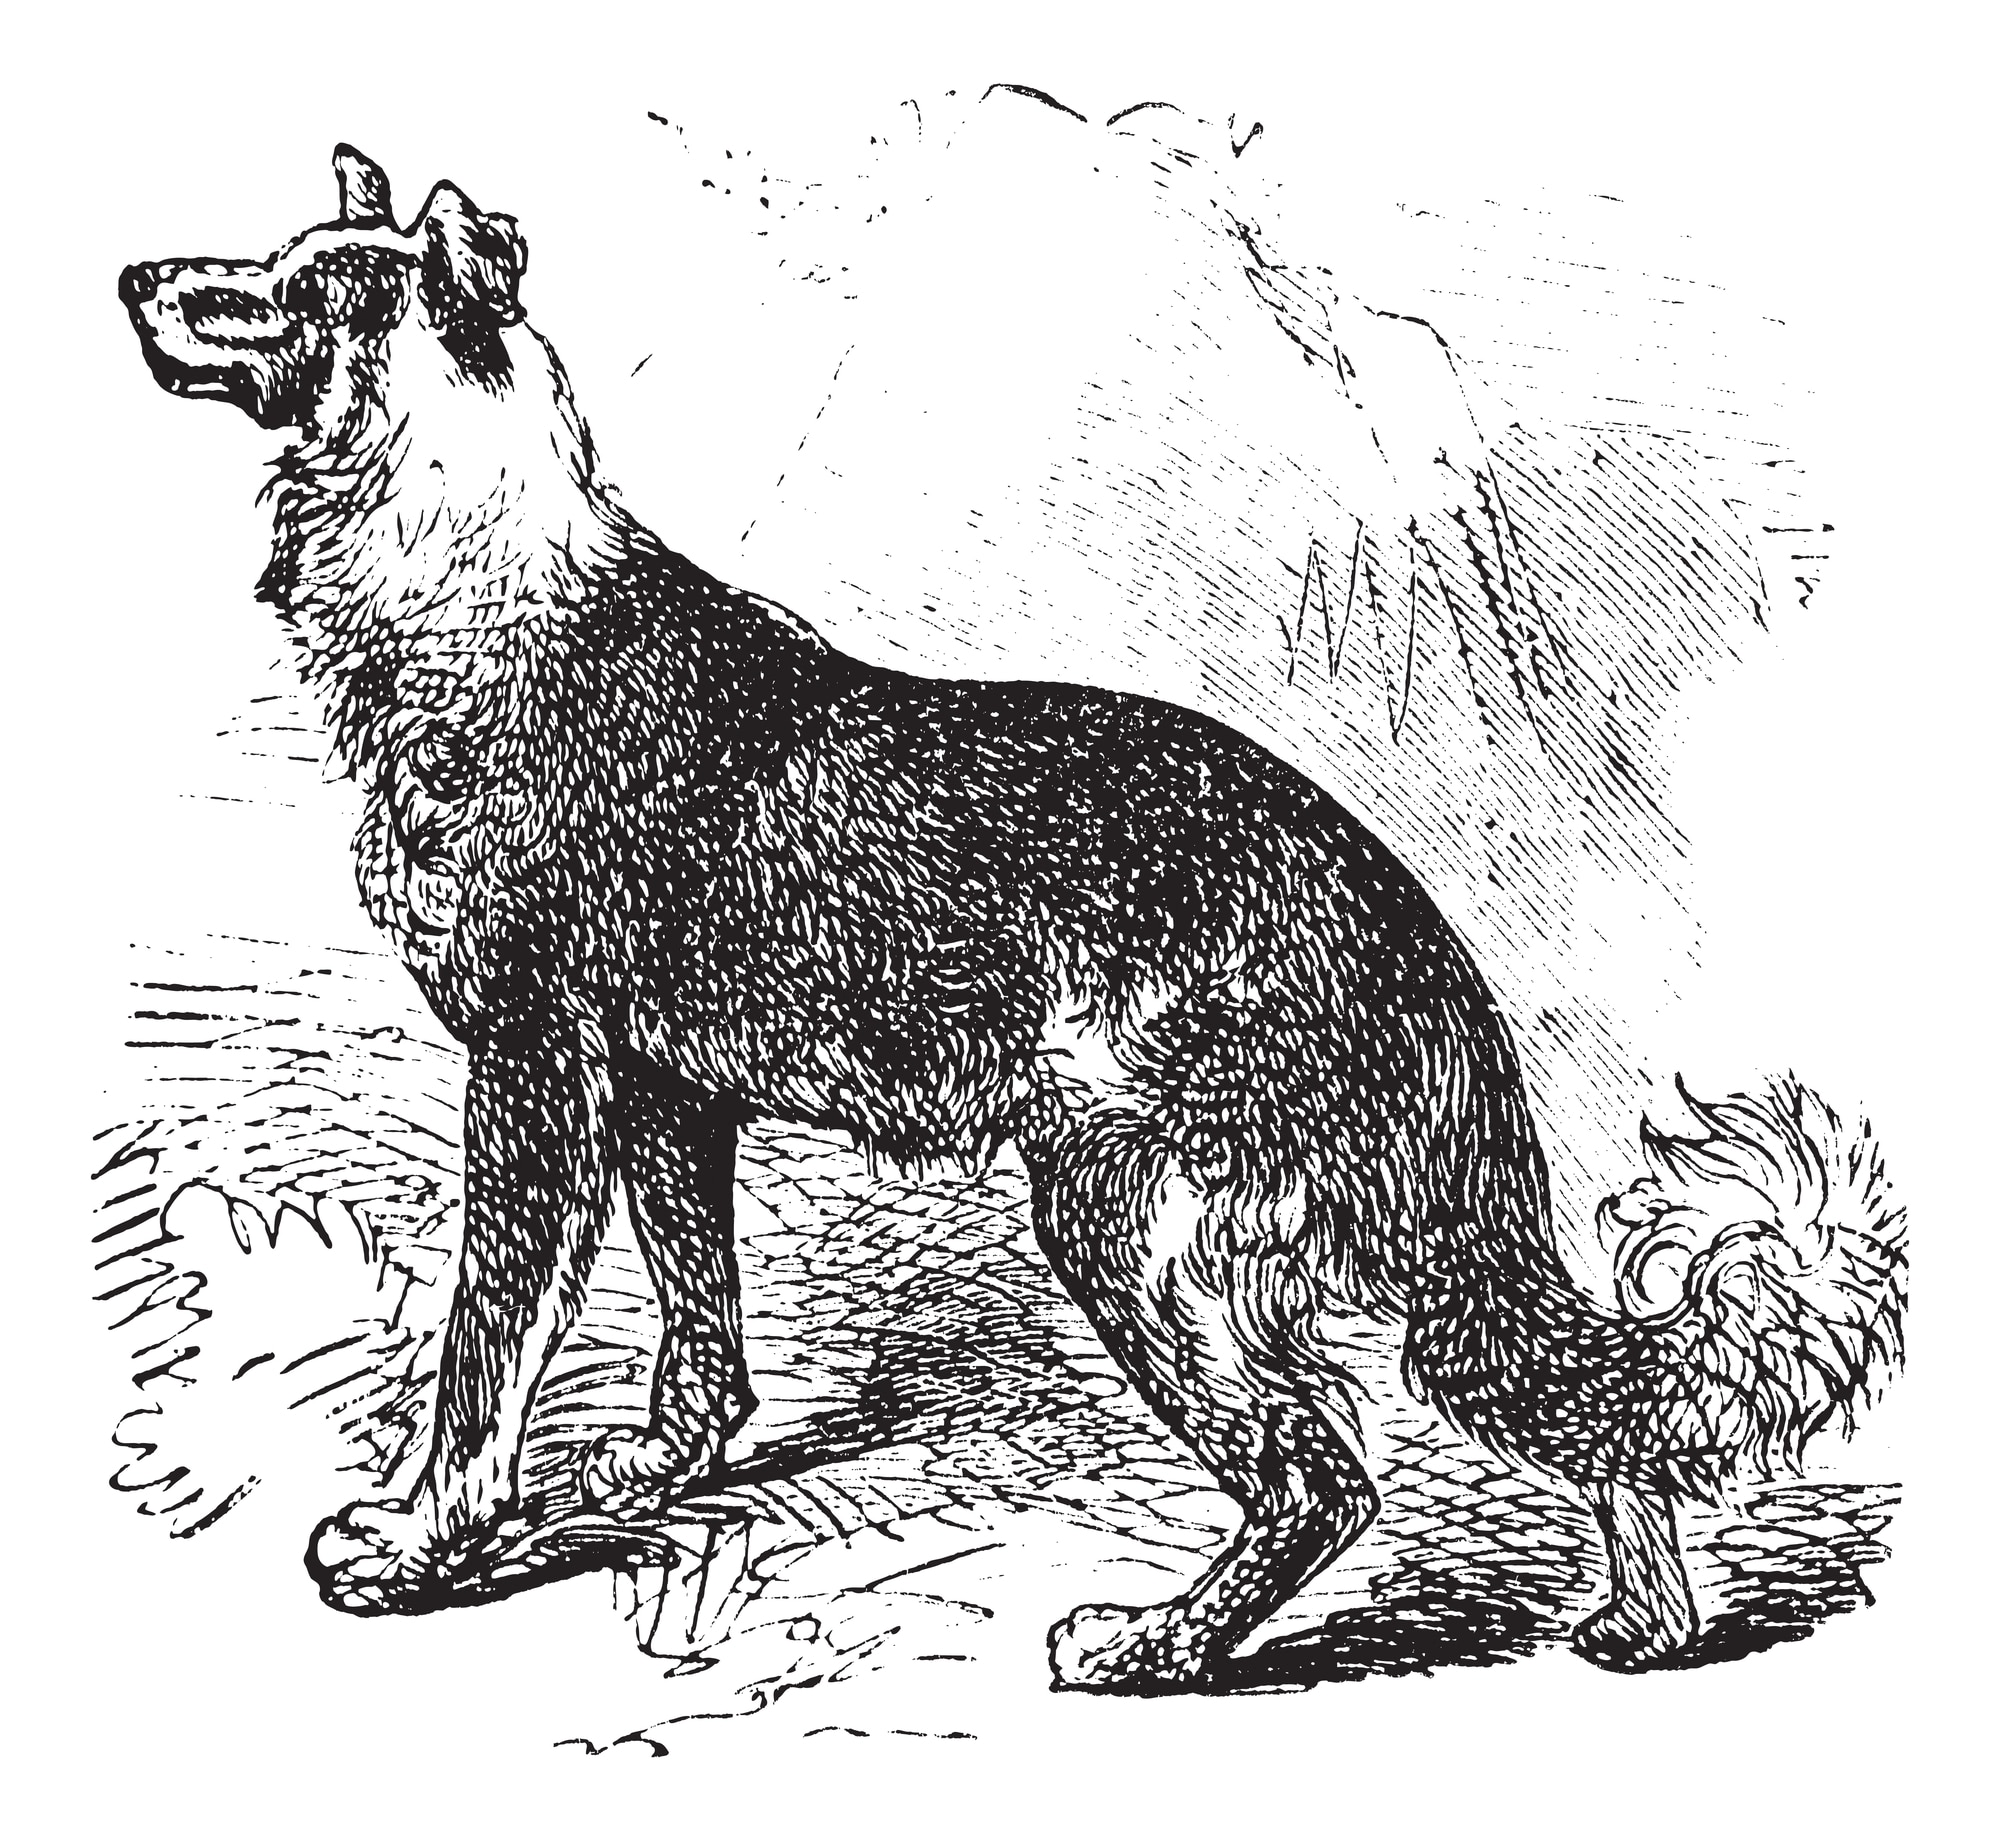 Belgian Shepherd Dog History